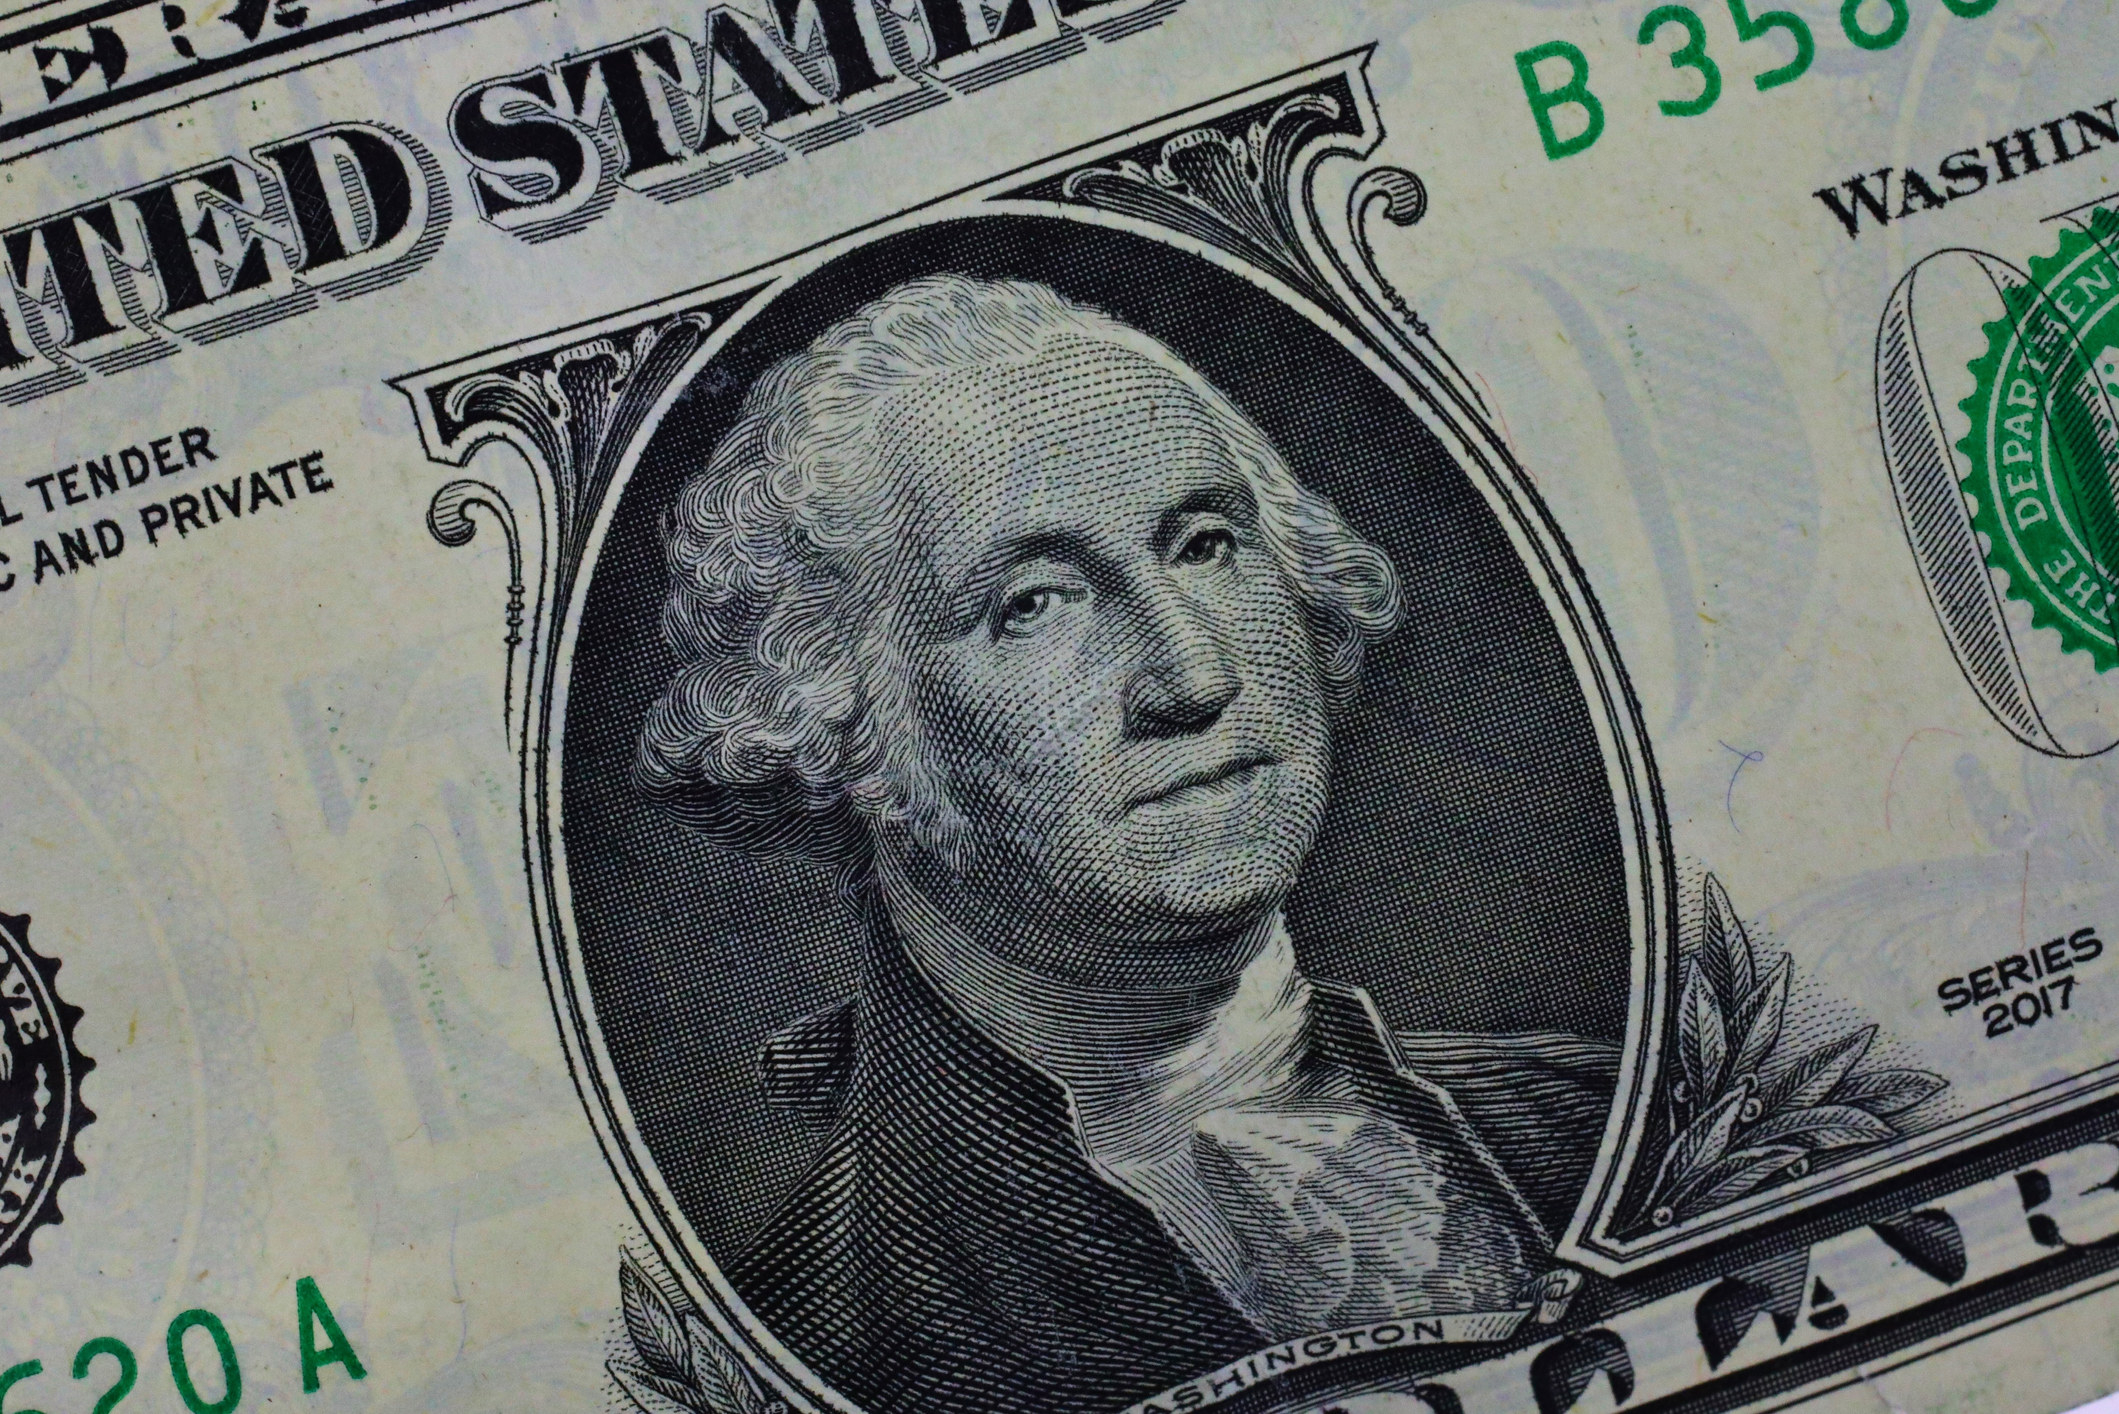 George Washington on a dollar bill